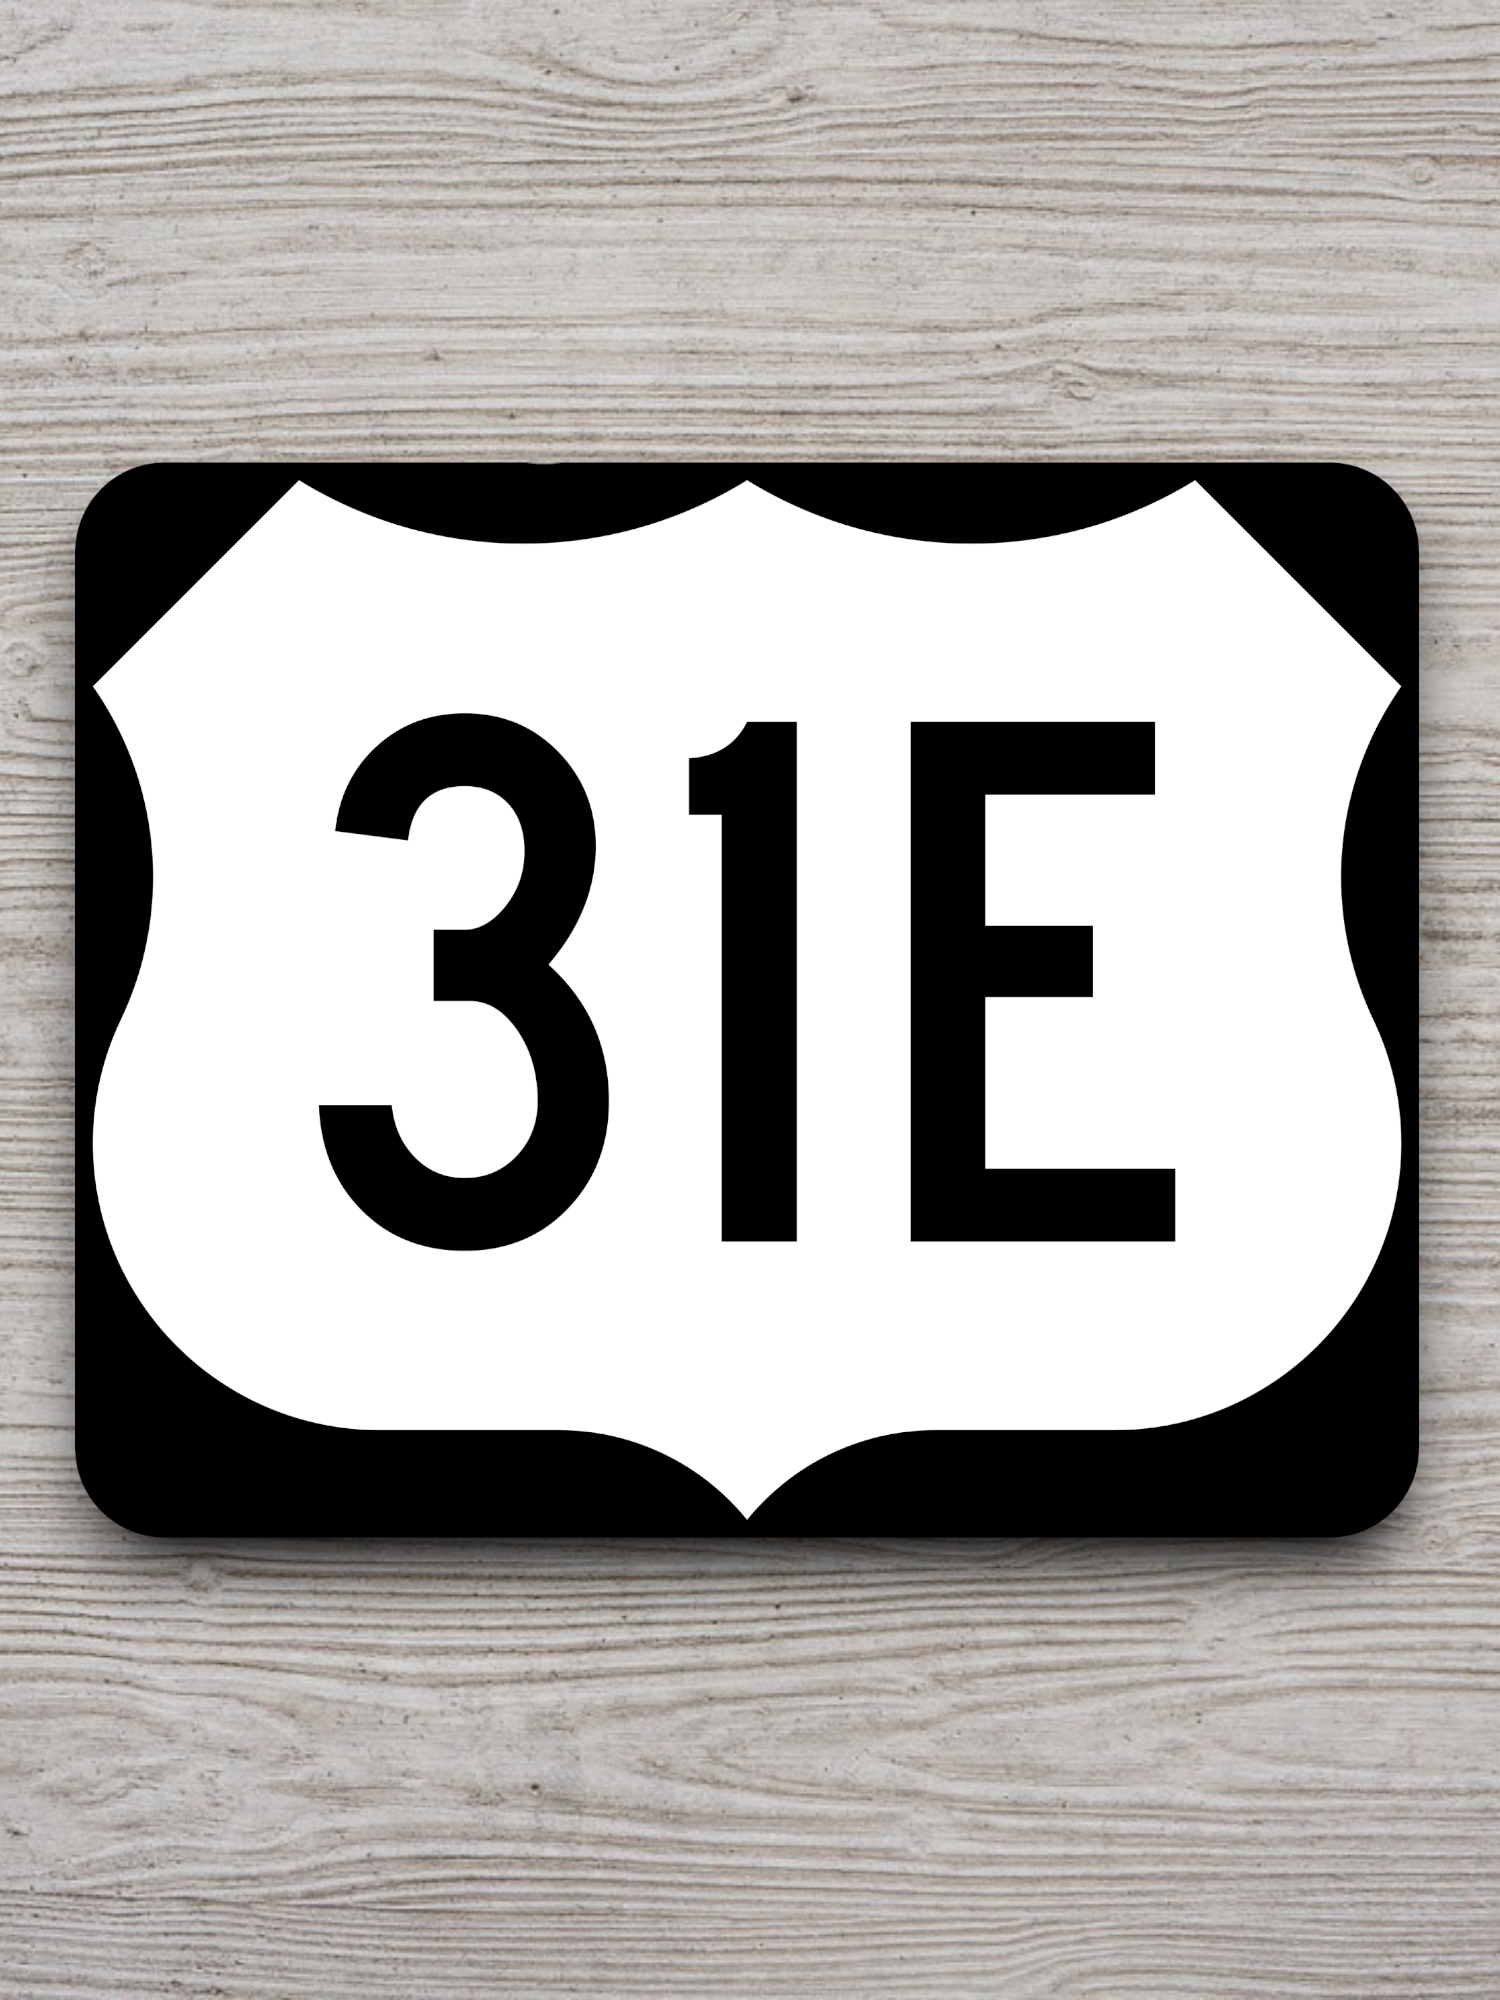 U.S. Route 31E Road Sign Sticker